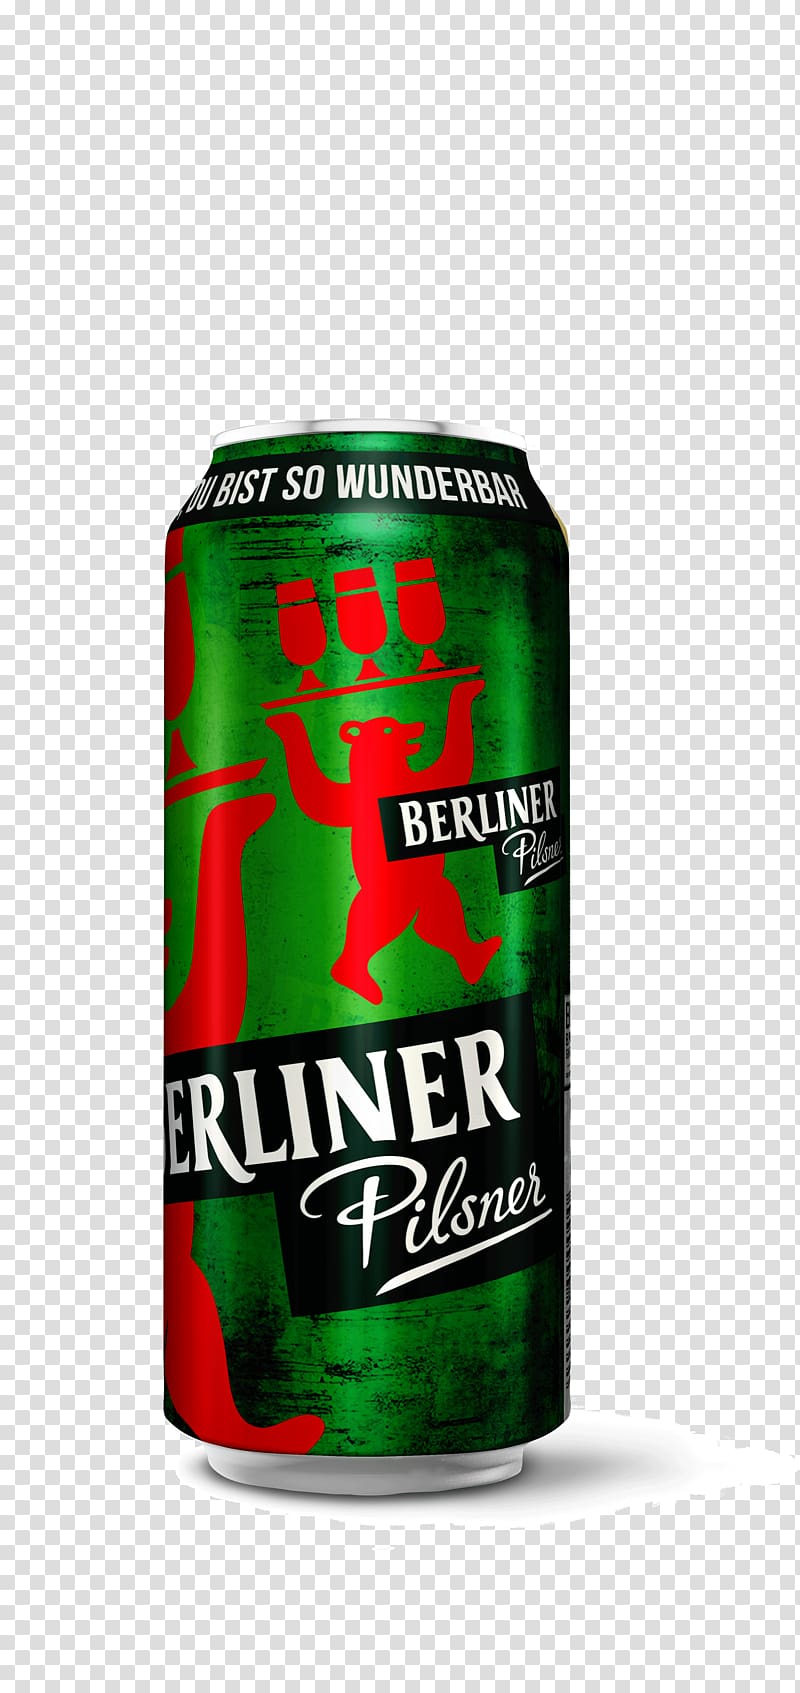 Pilsner Urquell Berliner Kindl Beer Berliner-Kindl-Schultheiss-Brauerei, 300 Dpi transparent background PNG clipart